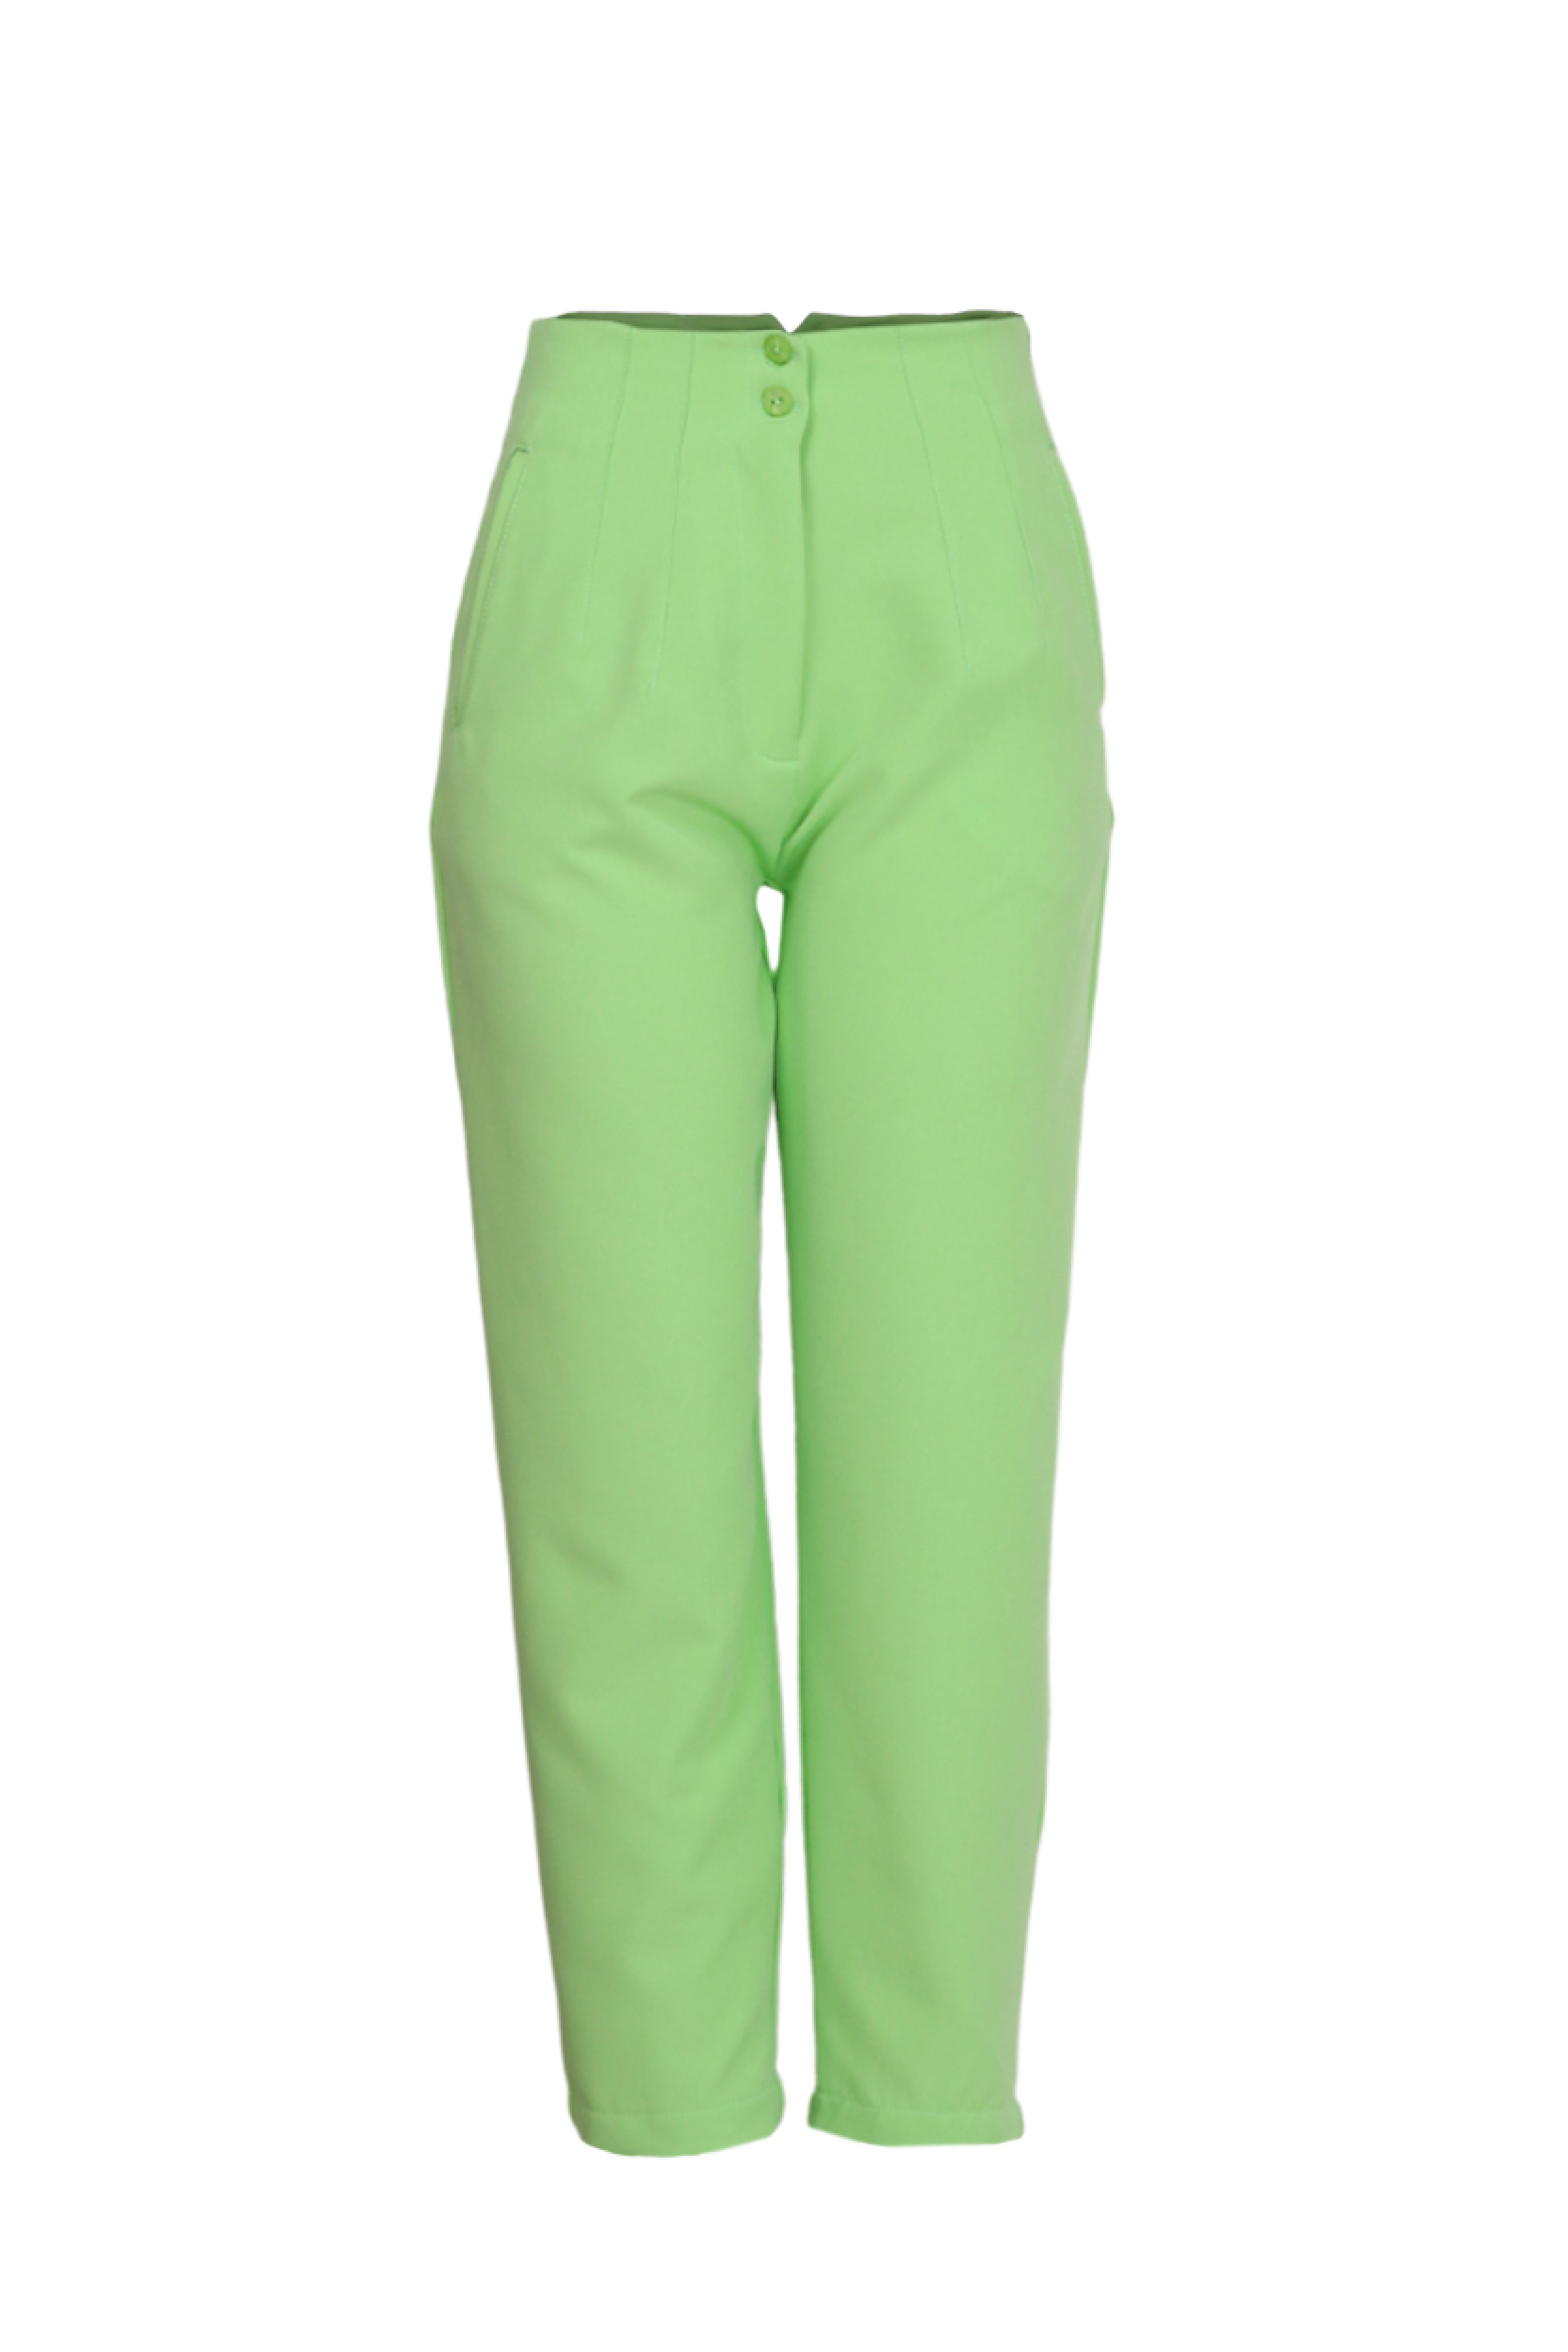 Pantalón verde limón tipo baggy para mujer